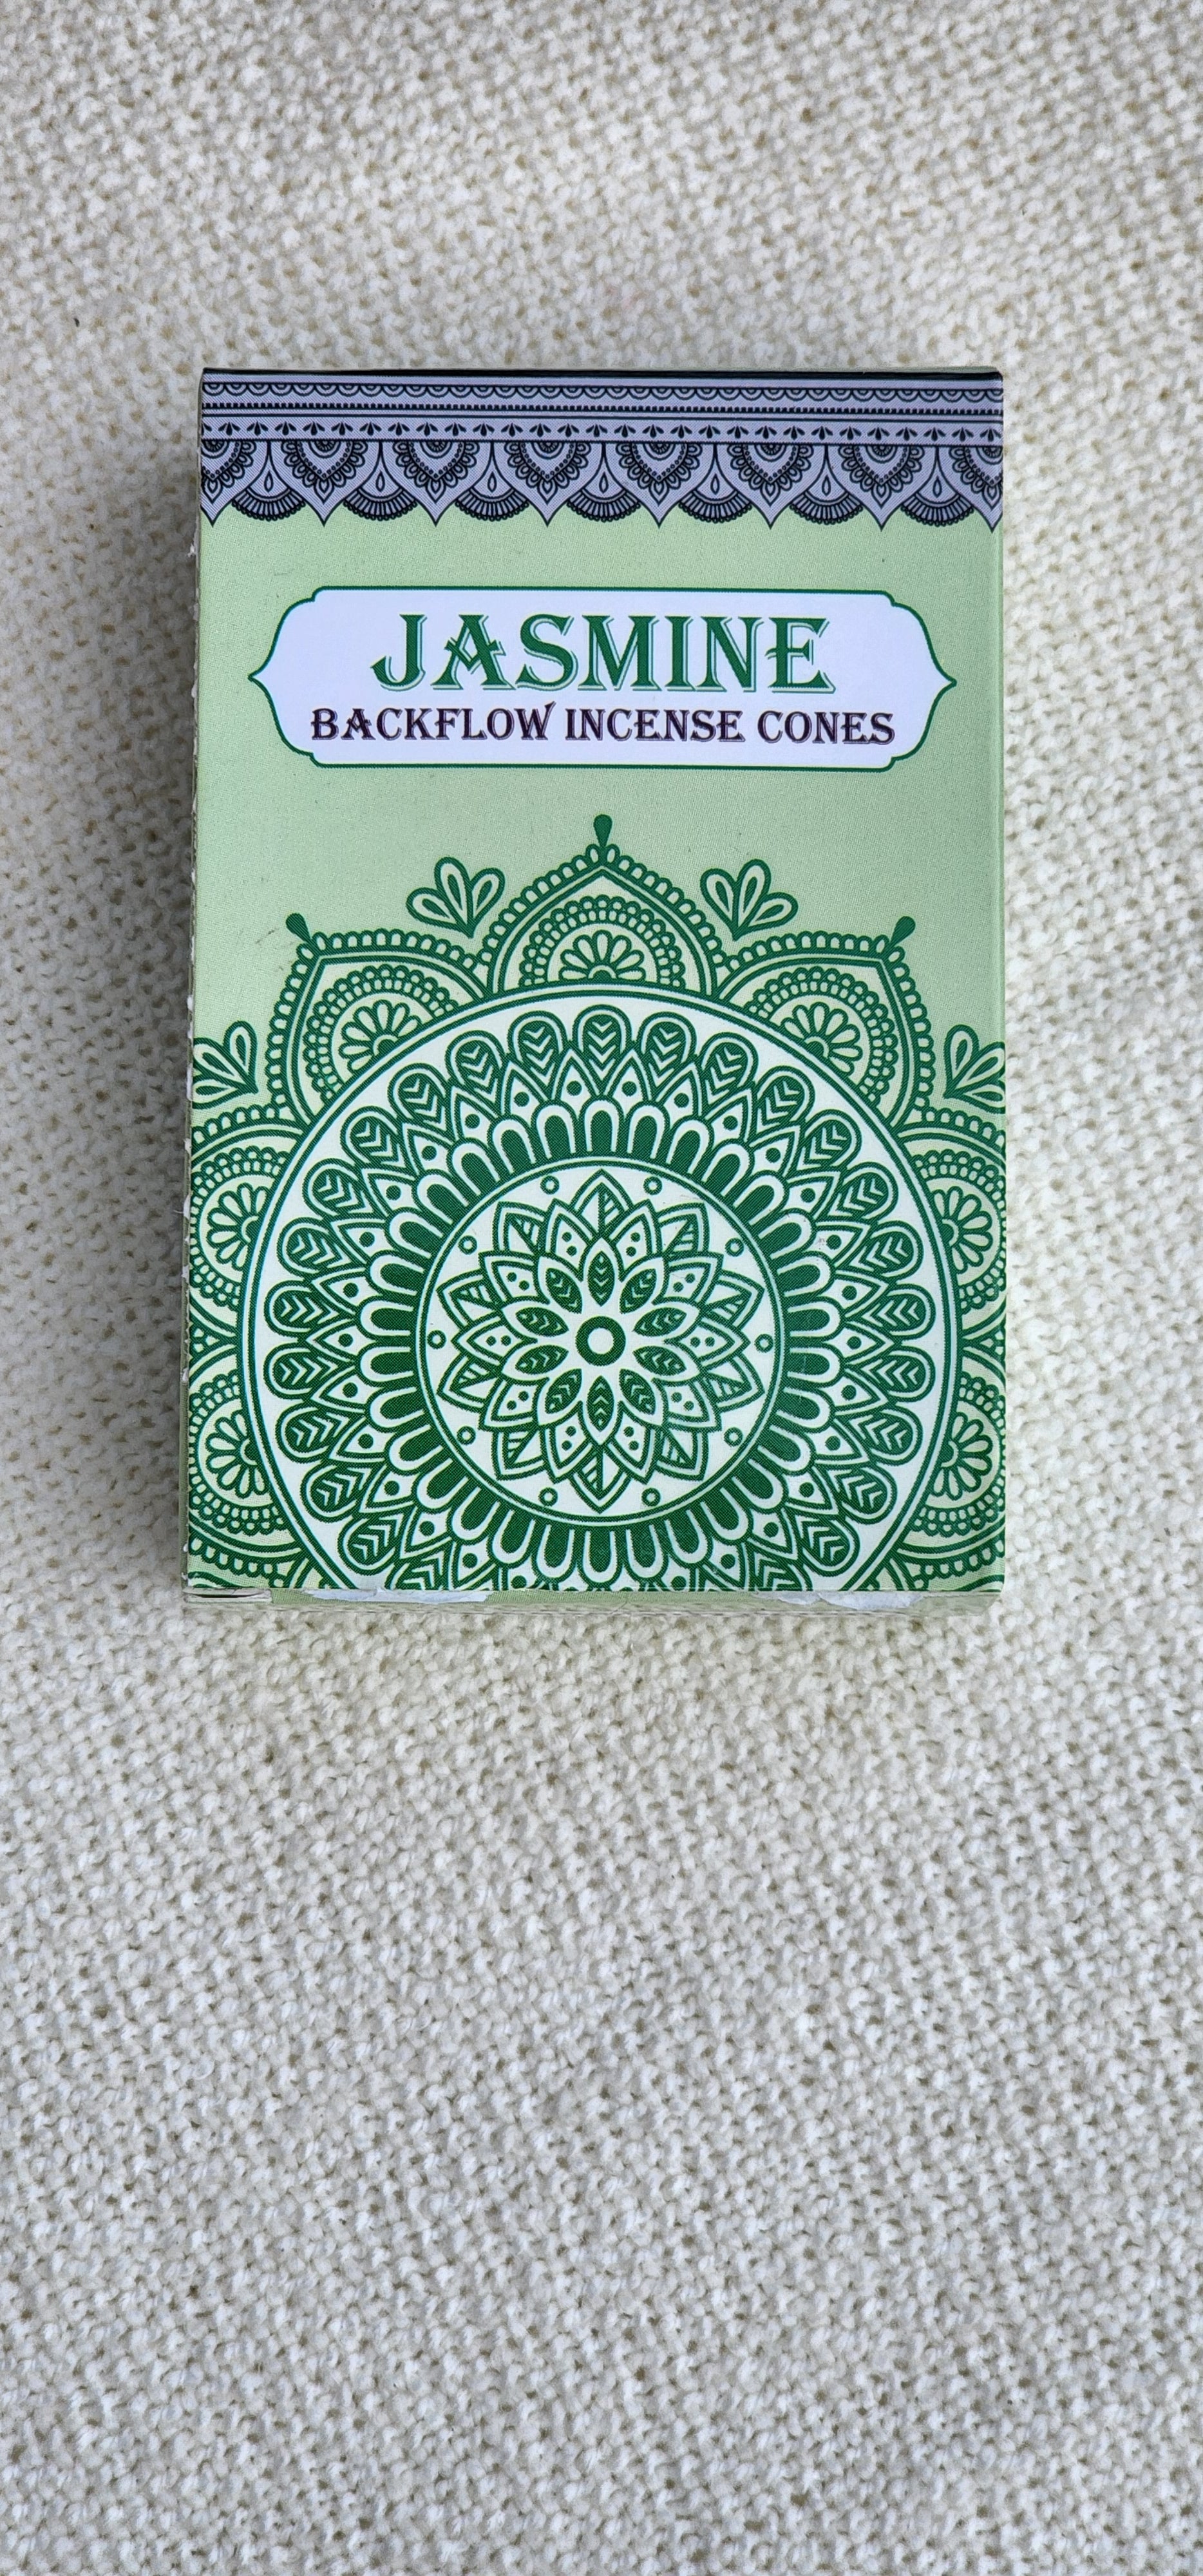 Backflow incense Cones| Jasmine